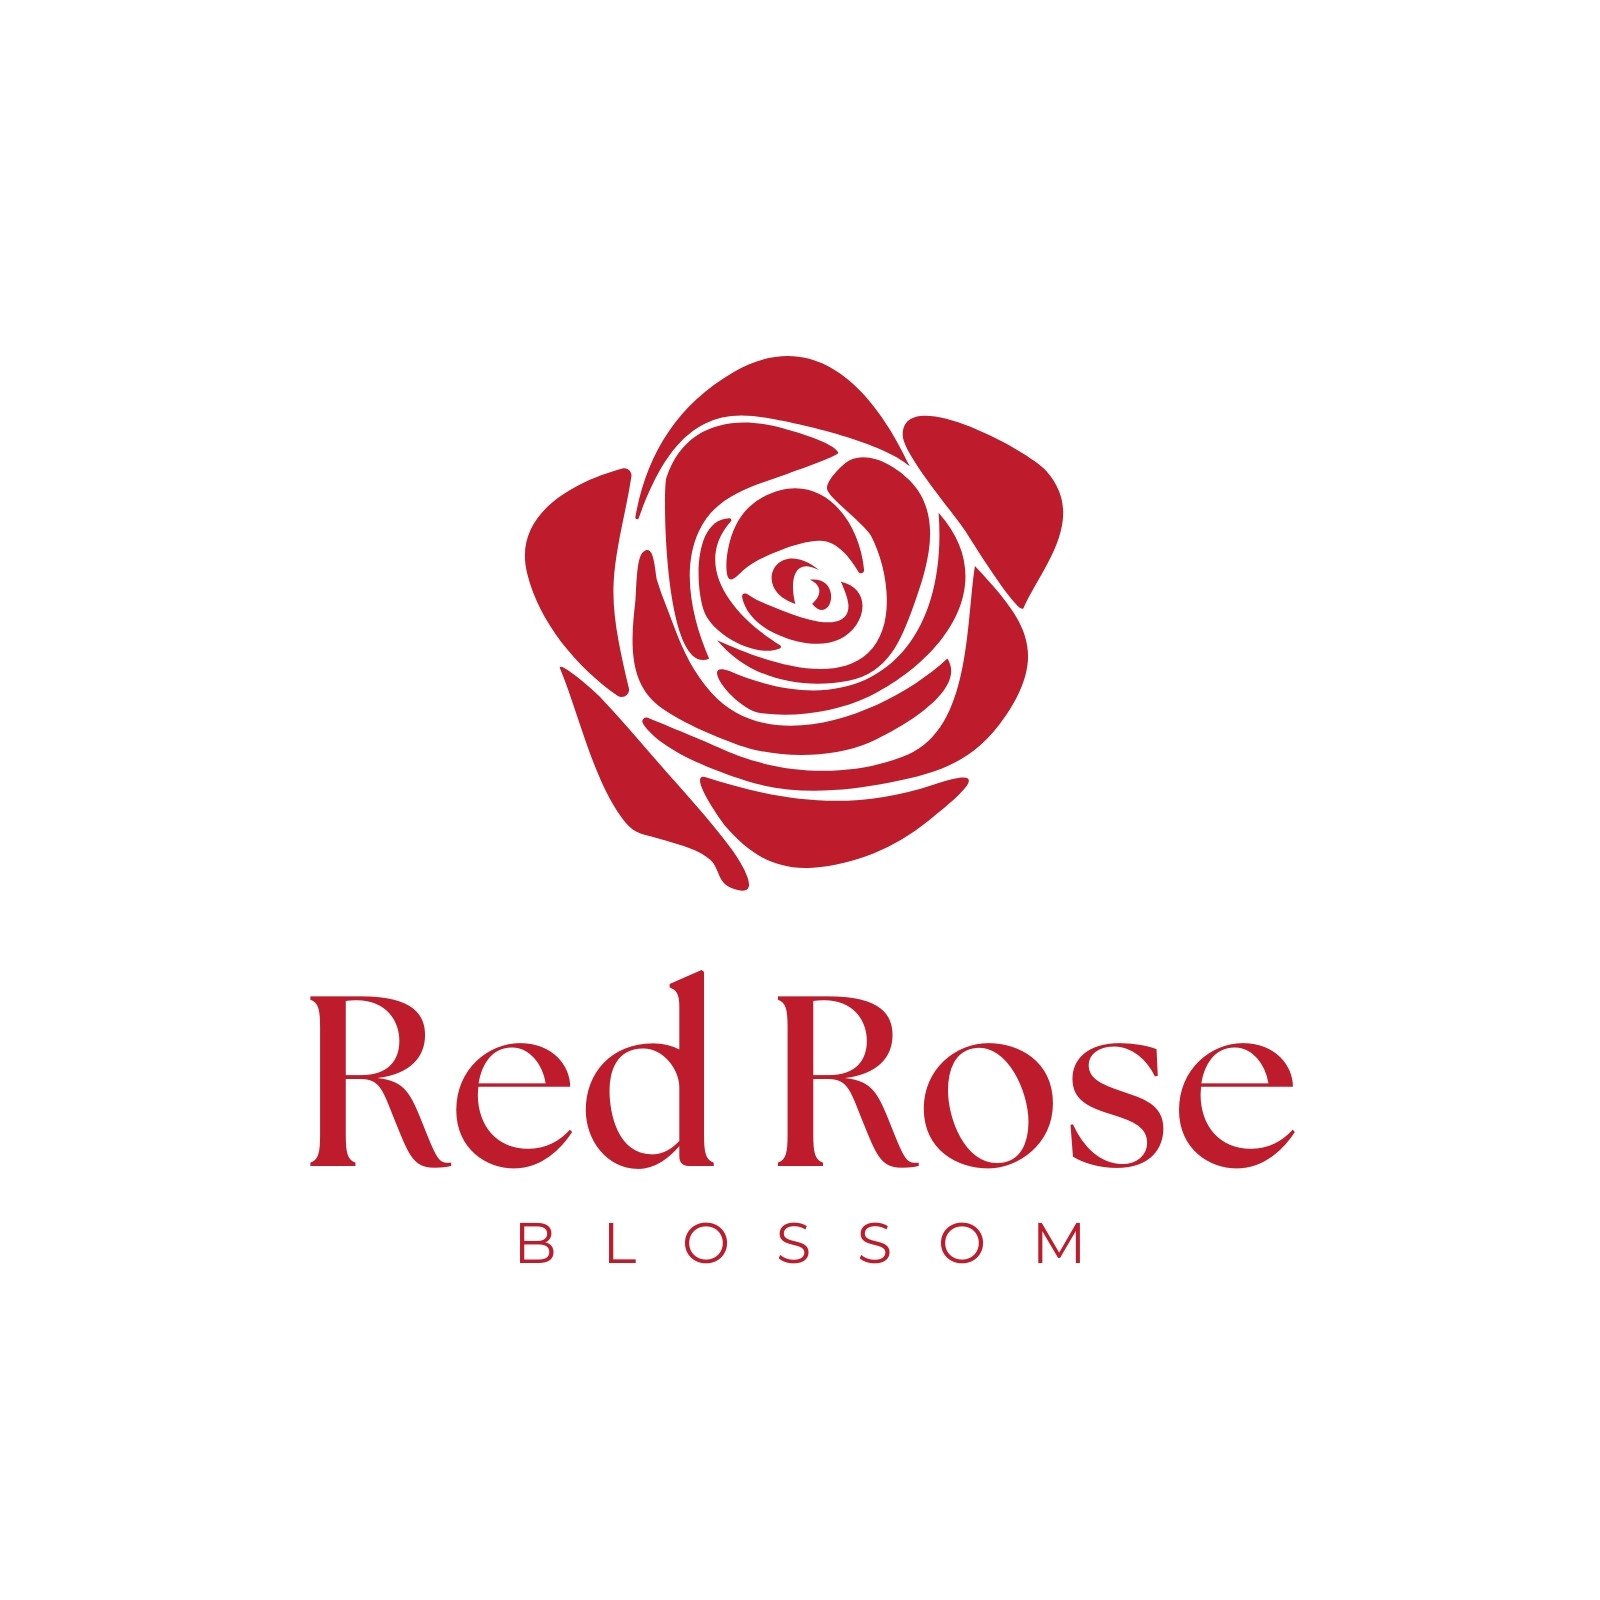 rose designs